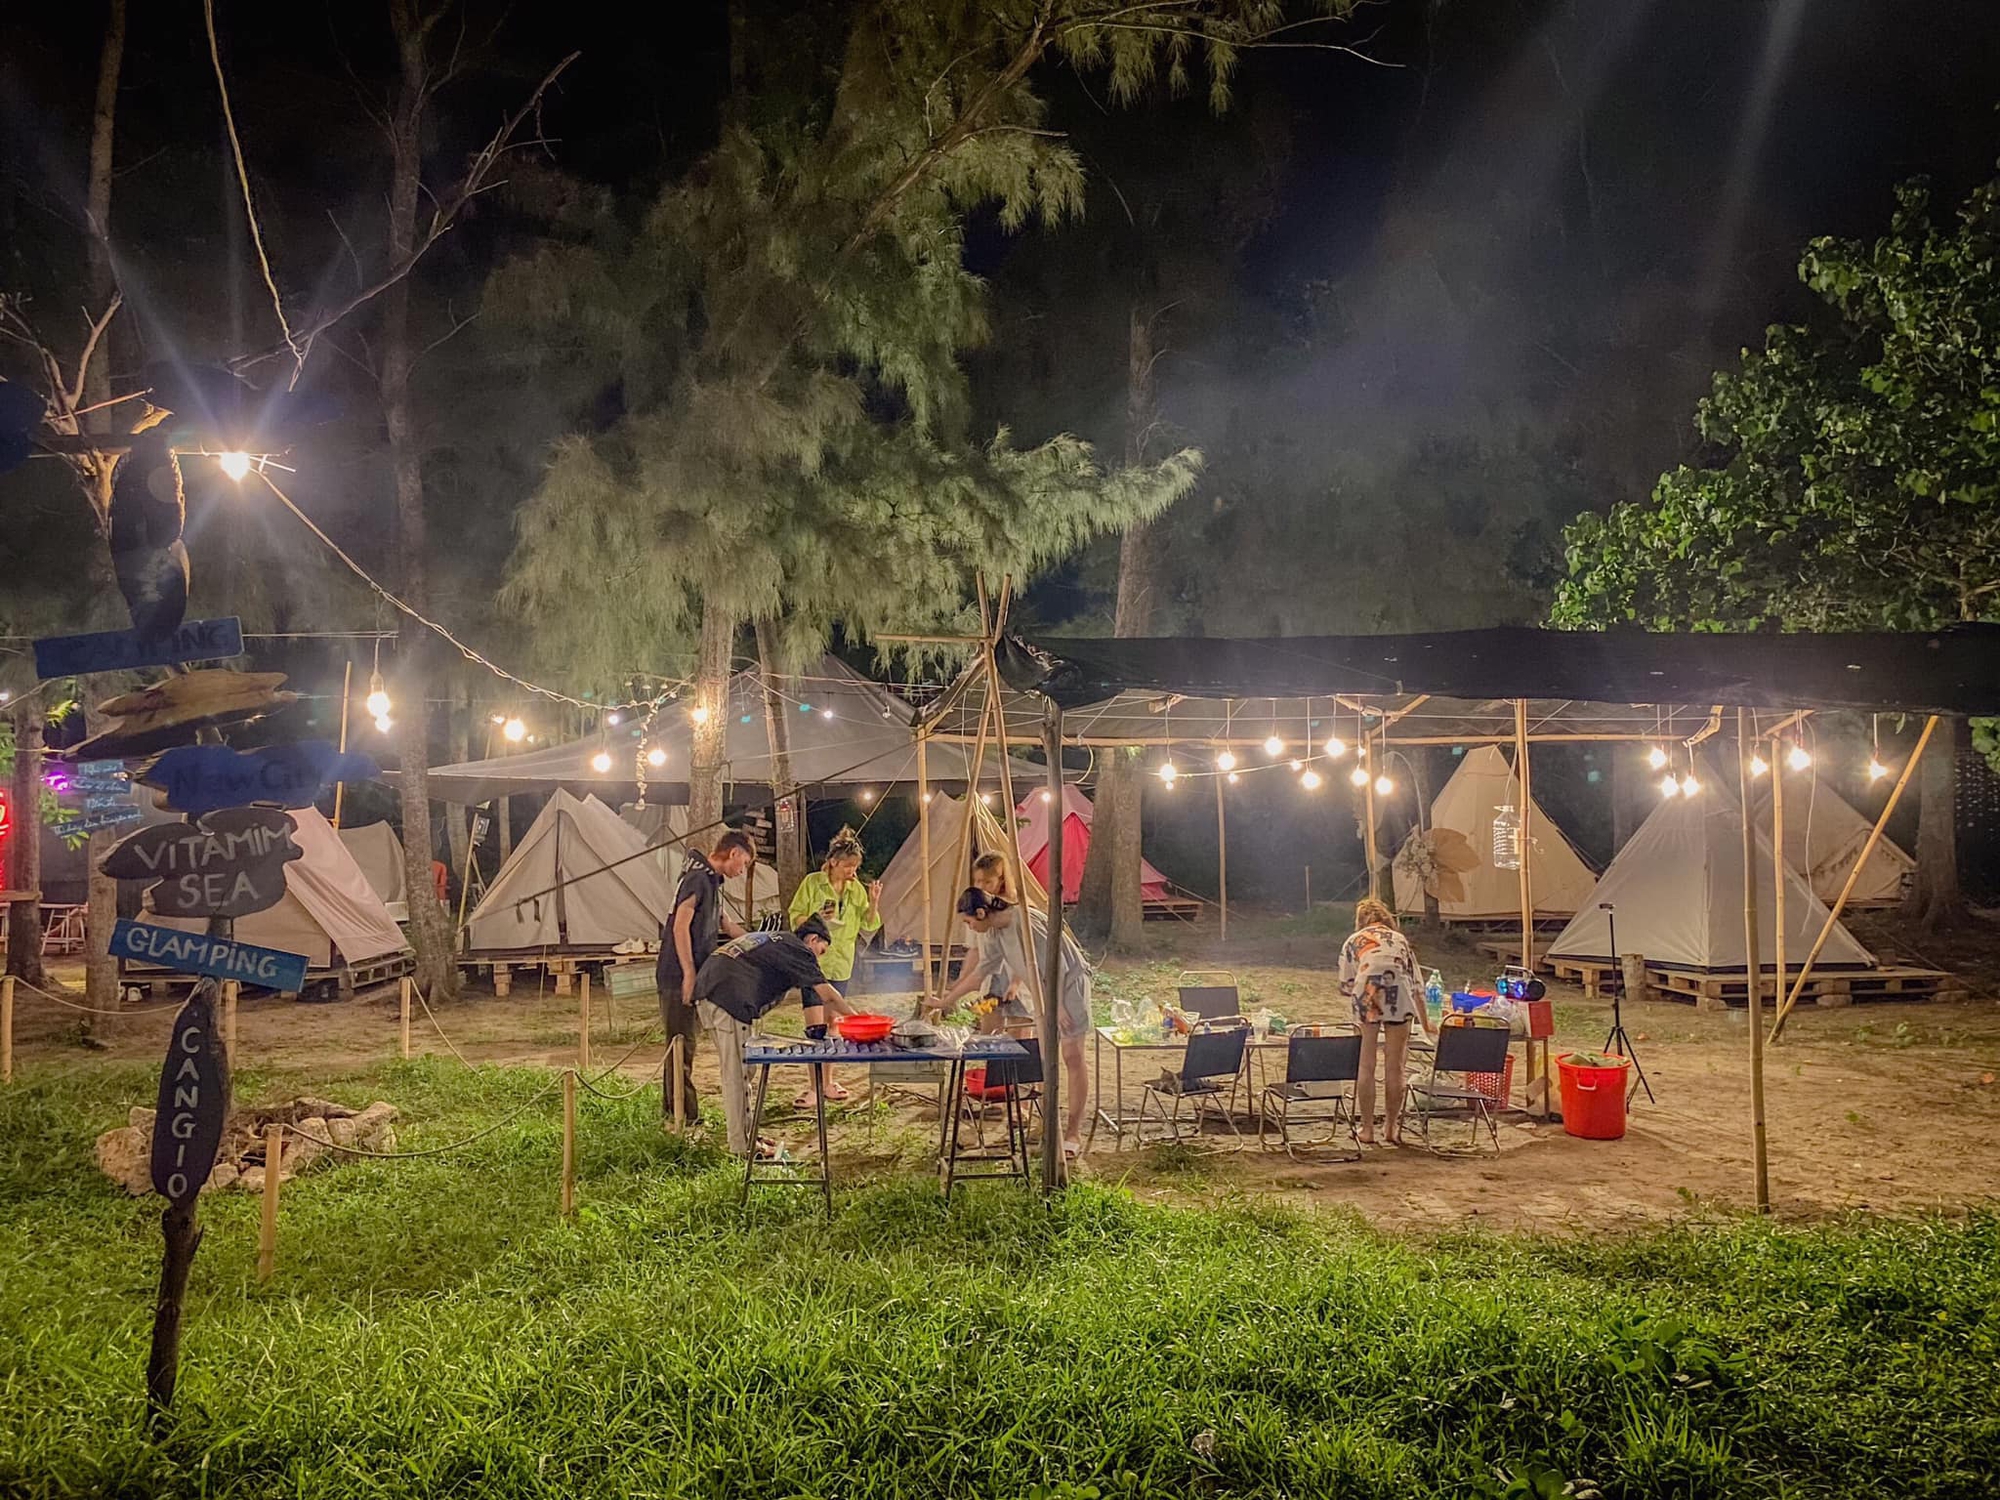 Khu cắm trại Cần Giờ nổi tiếng với dân TP.HCM vì có nhiều hoạt động vui chơi thư giãn - ảnh 22